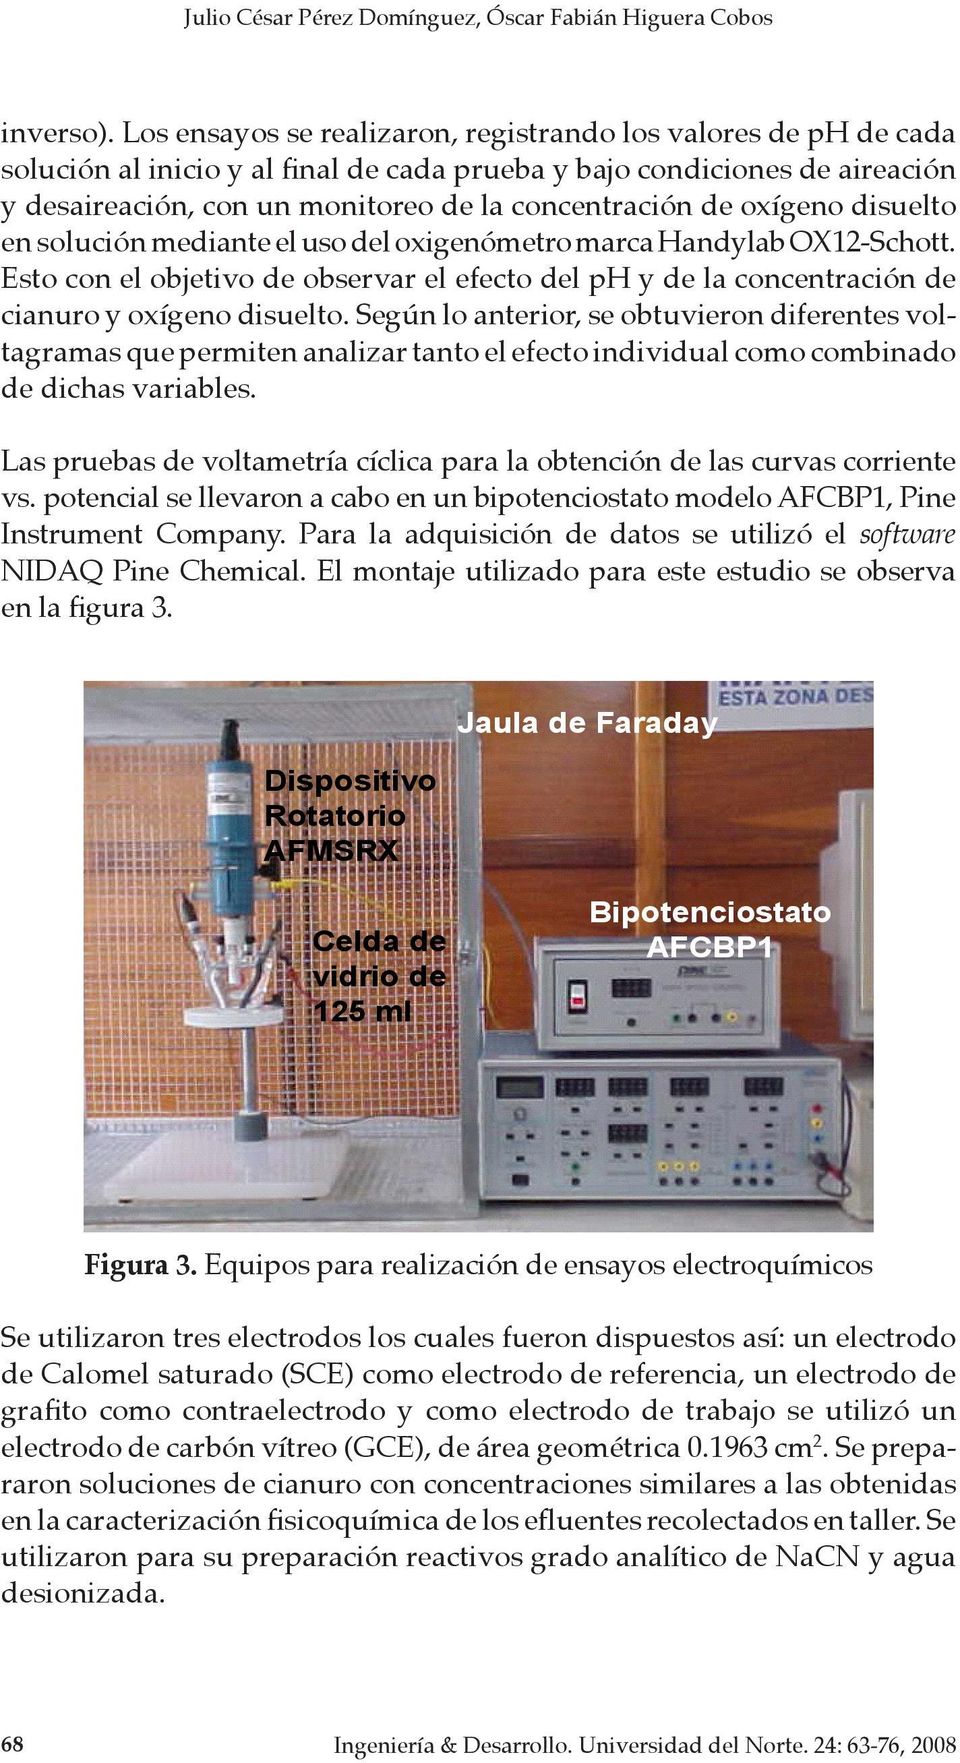 oxígeno disuelto en solución mediante el uso del oxigenómetro marca Handylab OX12-Schott. Esto con el objetivo de observar el efecto del ph y de la concentración de cianuro y oxígeno disuelto.